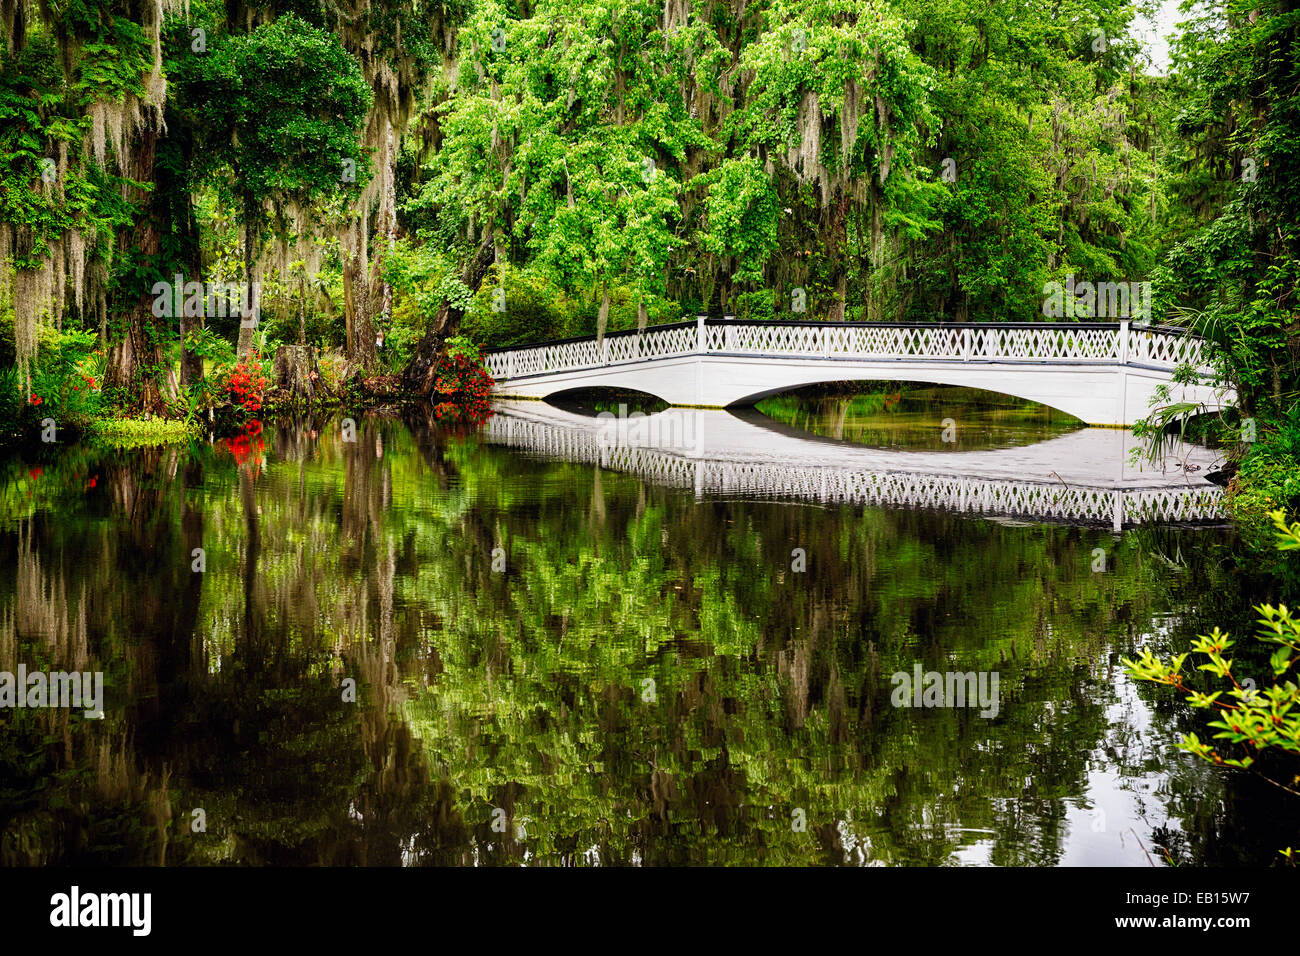 La riflessione di un bianco passerella in legno in un lago, Magnolia Plantation, Charleston, Carolina del Sud, STATI UNITI D'AMERICA Foto Stock